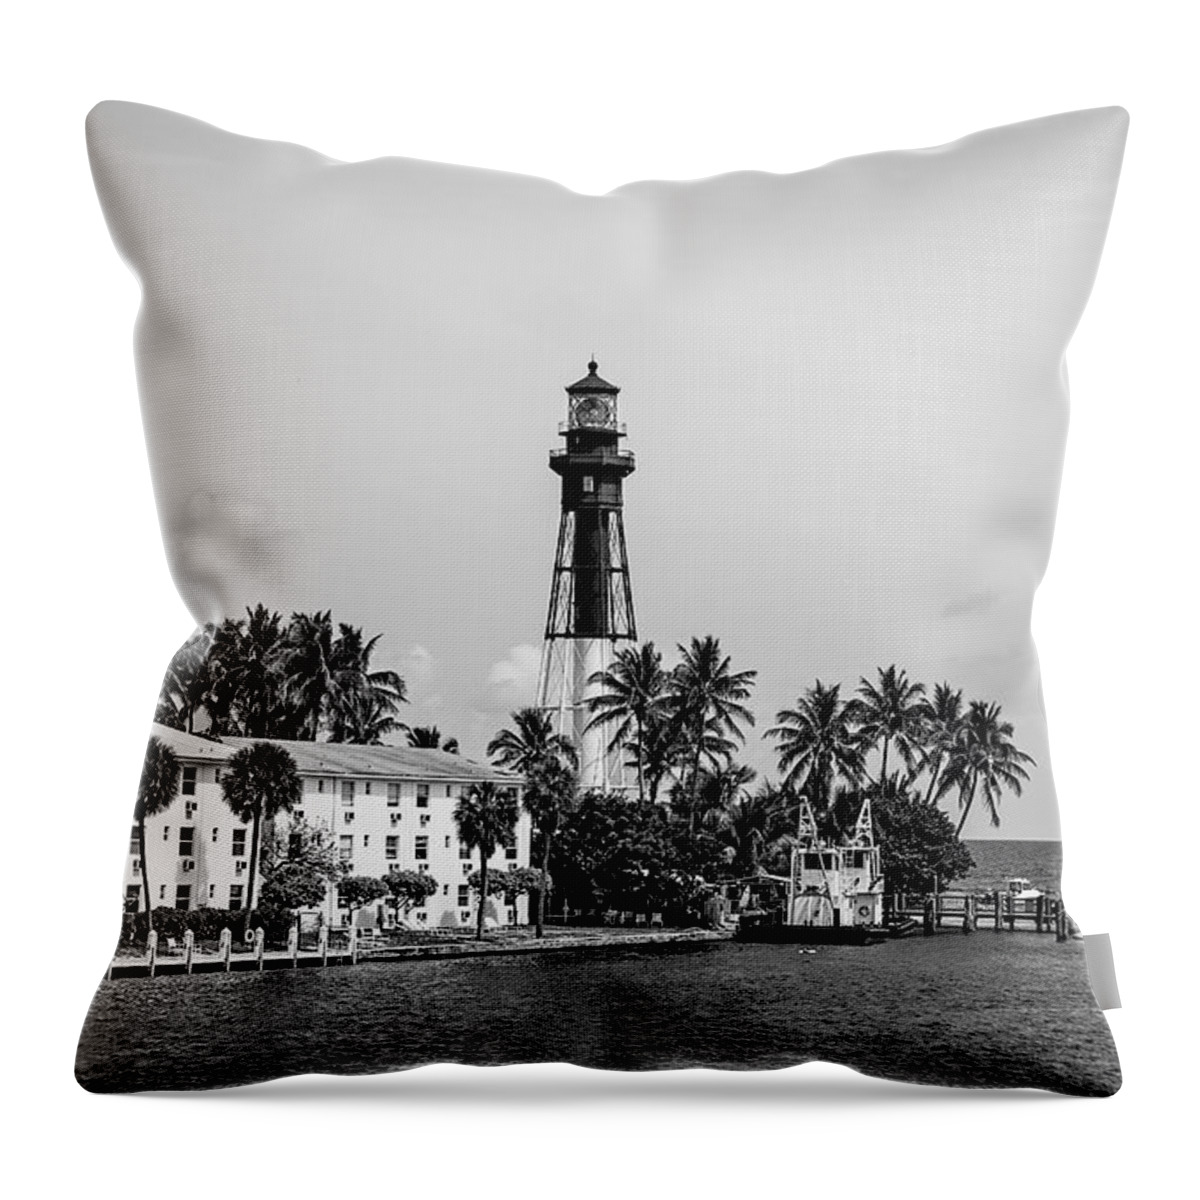 Lighthouse Throw Pillow featuring the photograph Hillsboro Inlet Light - BW by Scott Pellegrin